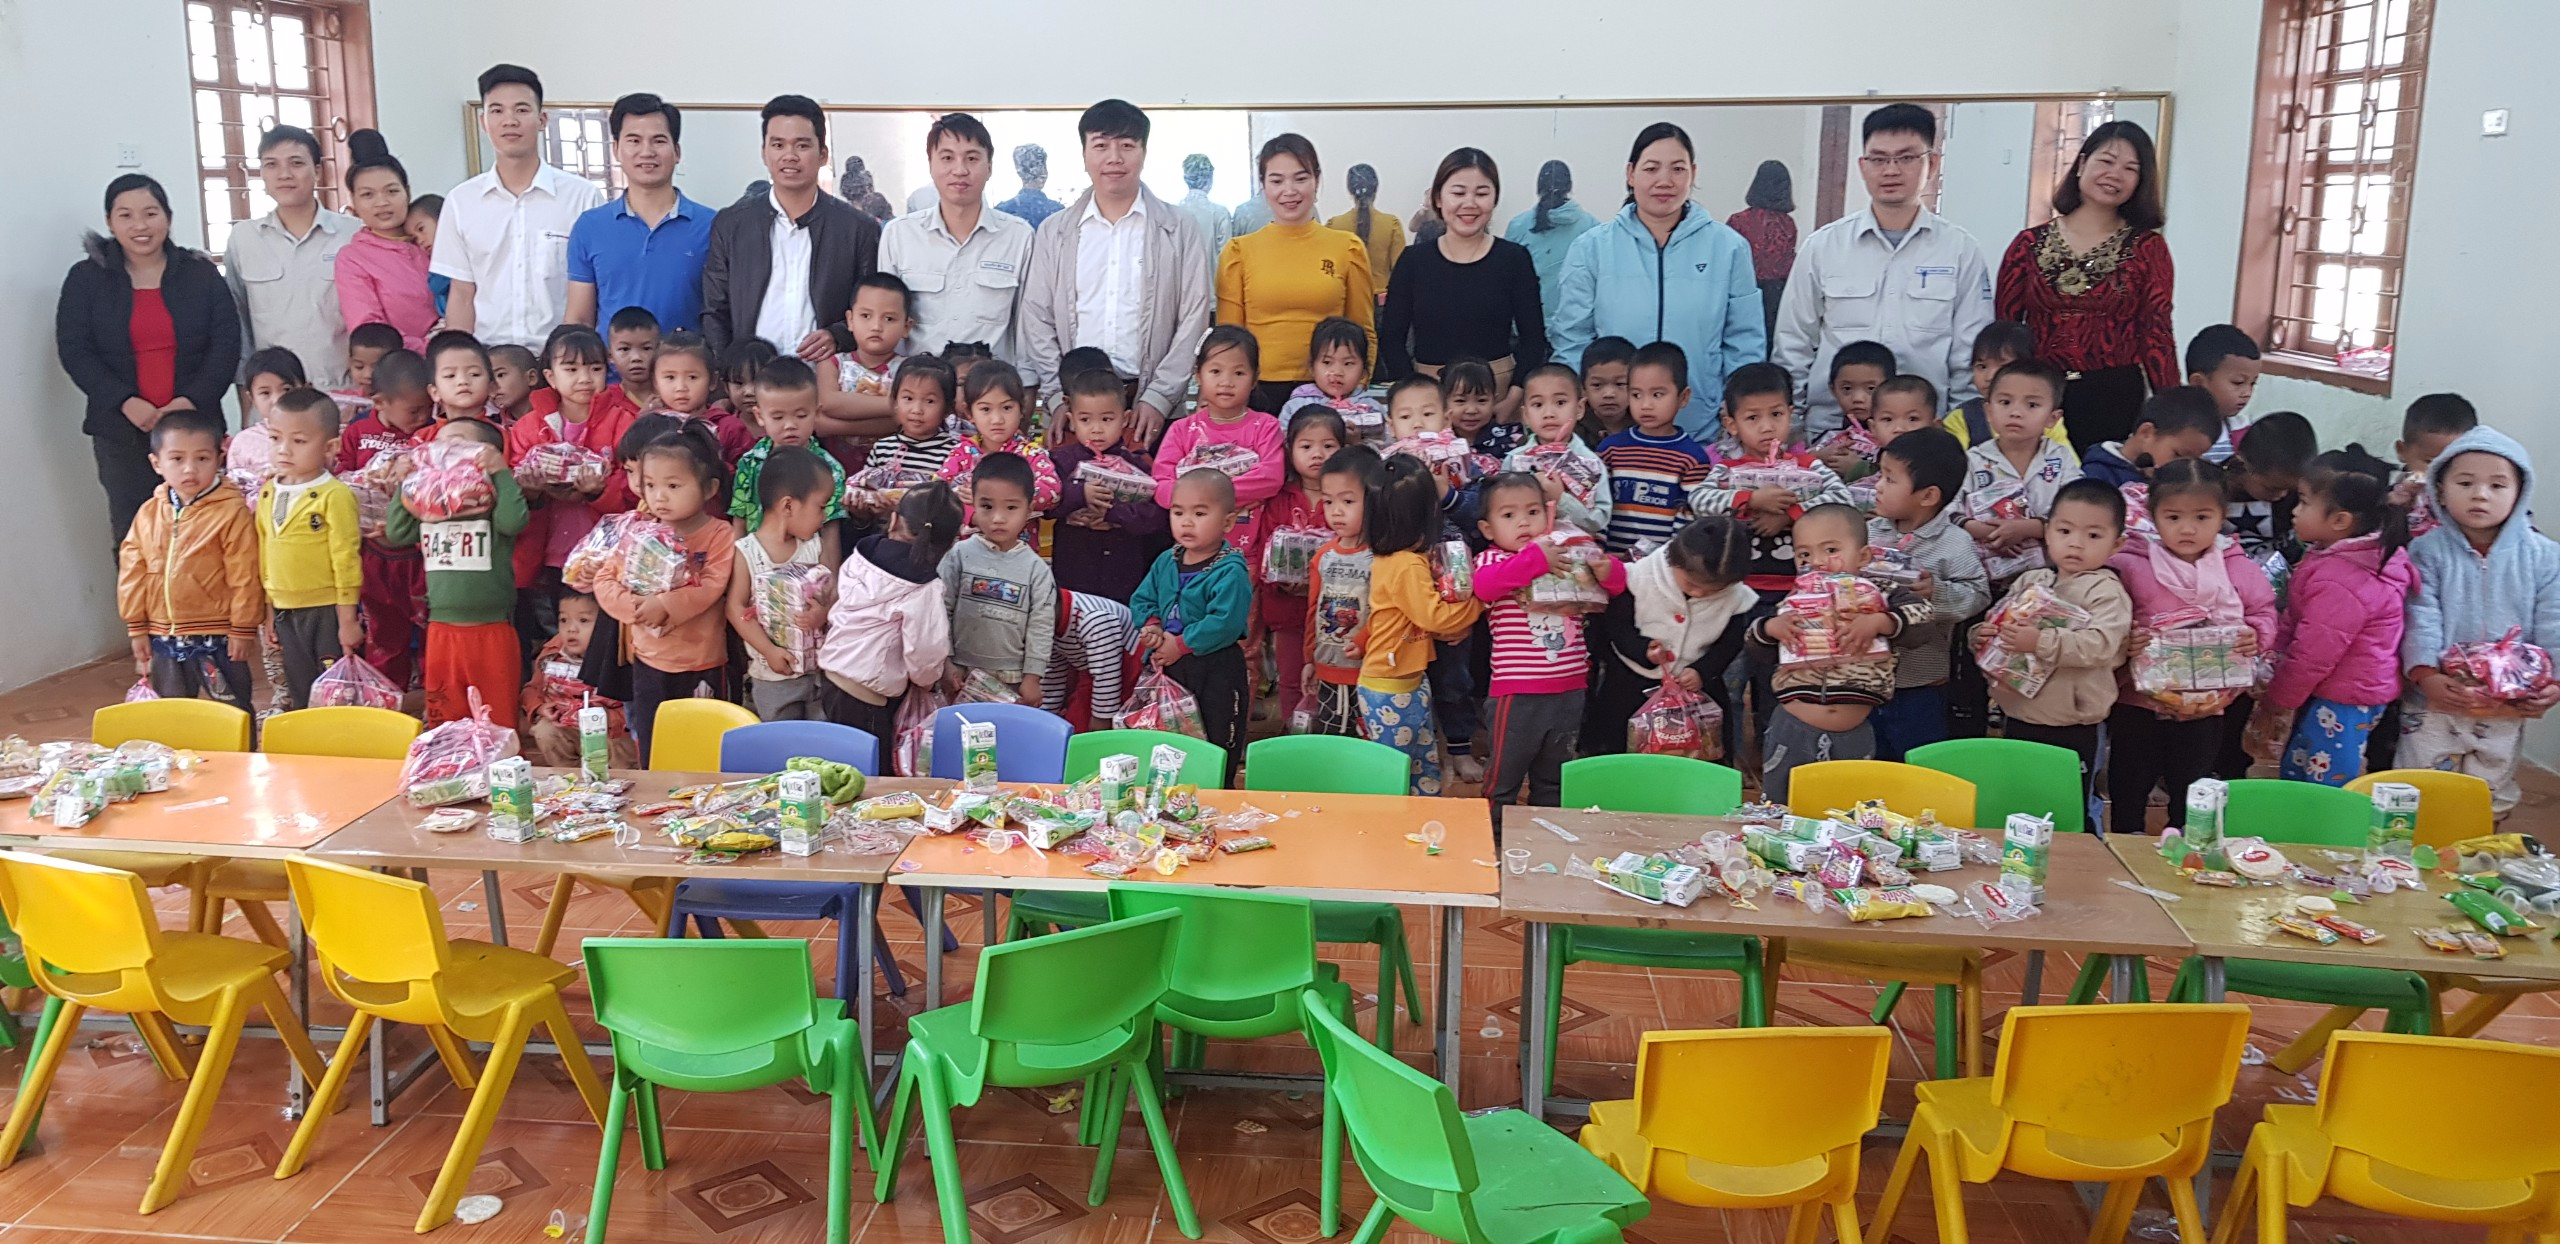 ĐTN PXVH Huội Quảng tổ chức tặng quà cho các em học sinh trường mầm non Chiềng Lao C nhân dịp Tết Nguyên đán 2020.